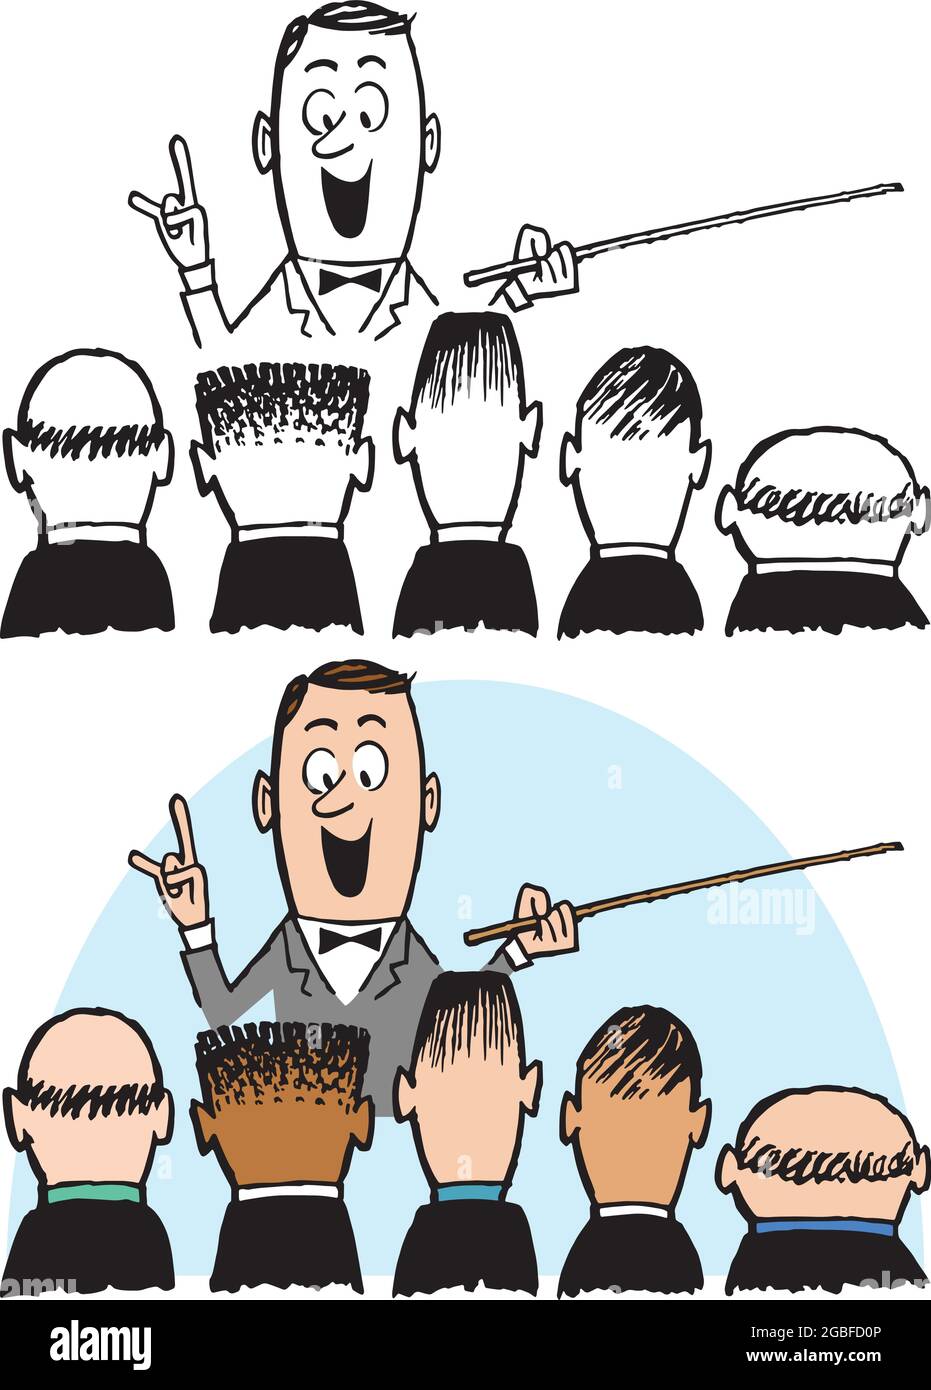 Un dessin animé rétro vintage d'un homme donnant une conférence à un groupe d'hommes. Illustration de Vecteur